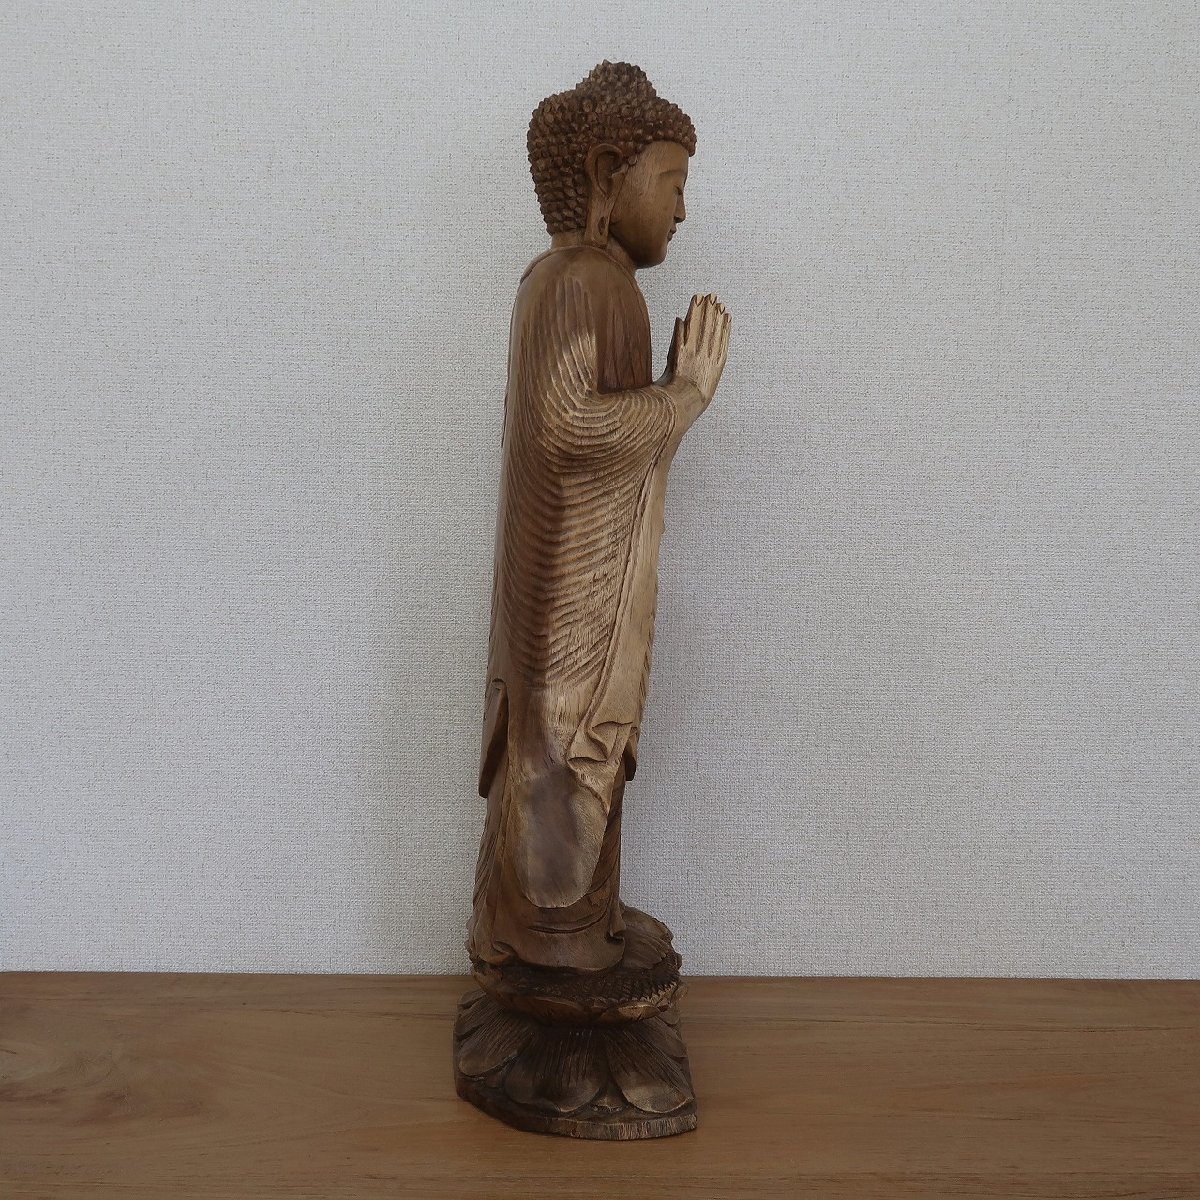 ブッダの木彫り 立像 合掌 80cm スワール無垢材 木製仏像 ブッダオブジェ 仏陀 釈迦 観音菩薩 置物 置き物 080776_画像3